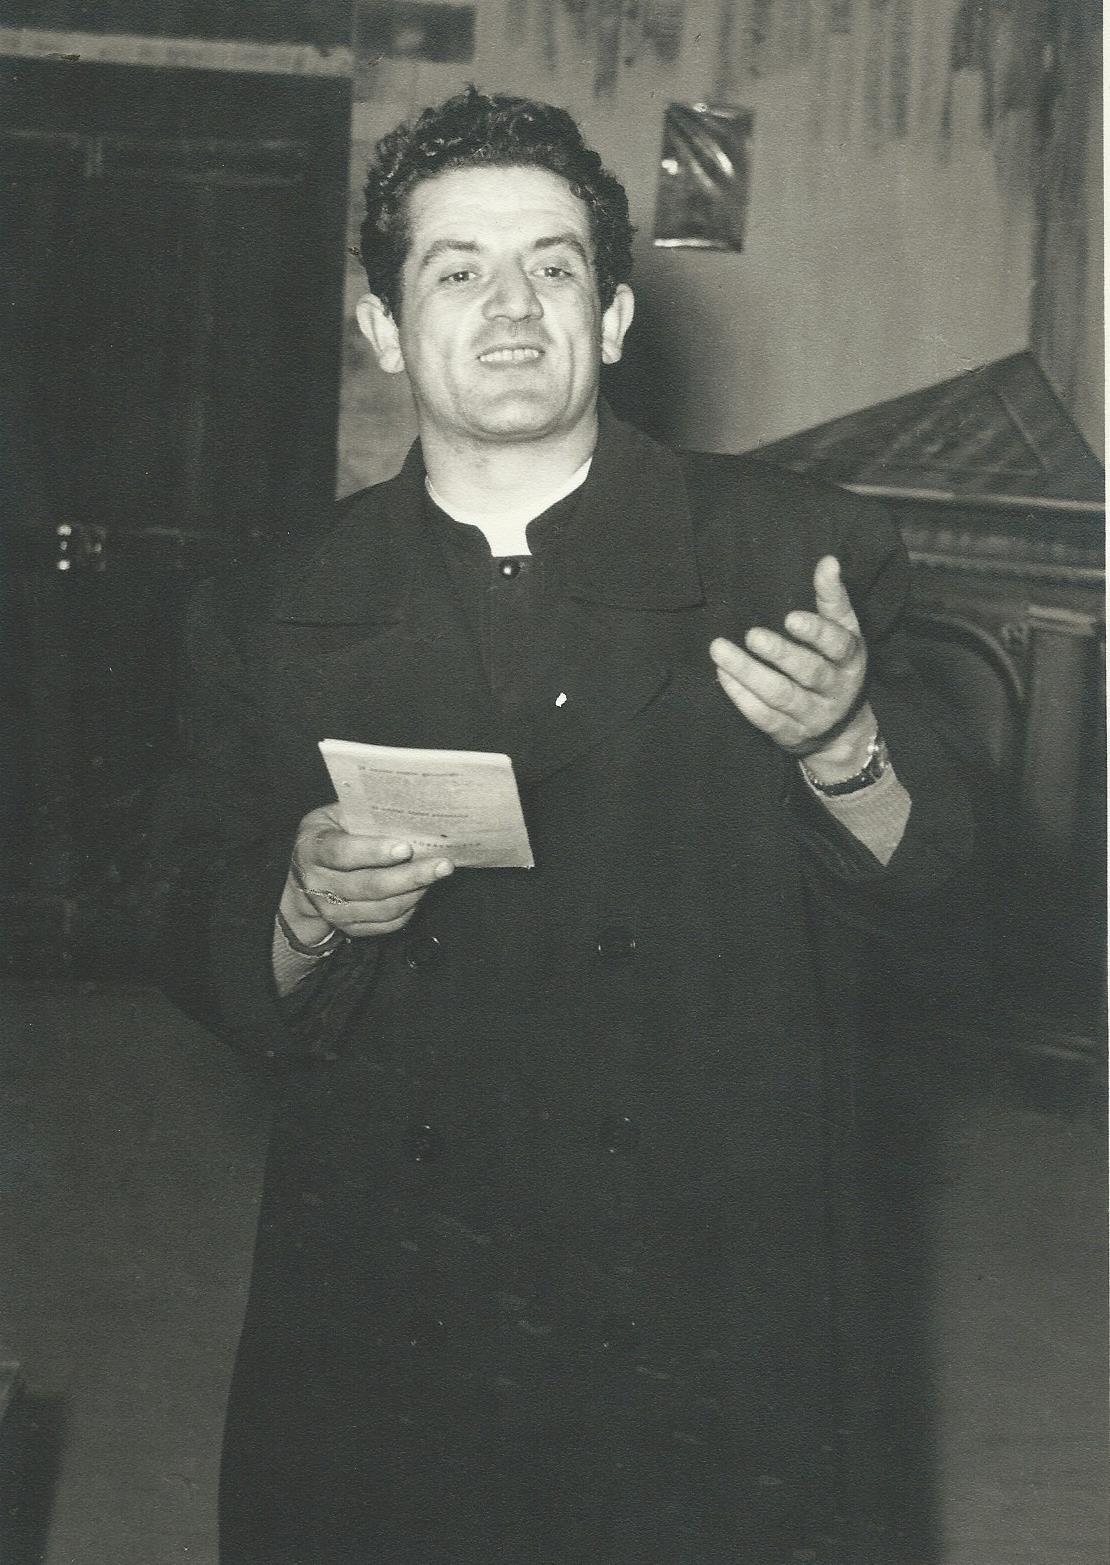 Don Nicola Pietragiovanna